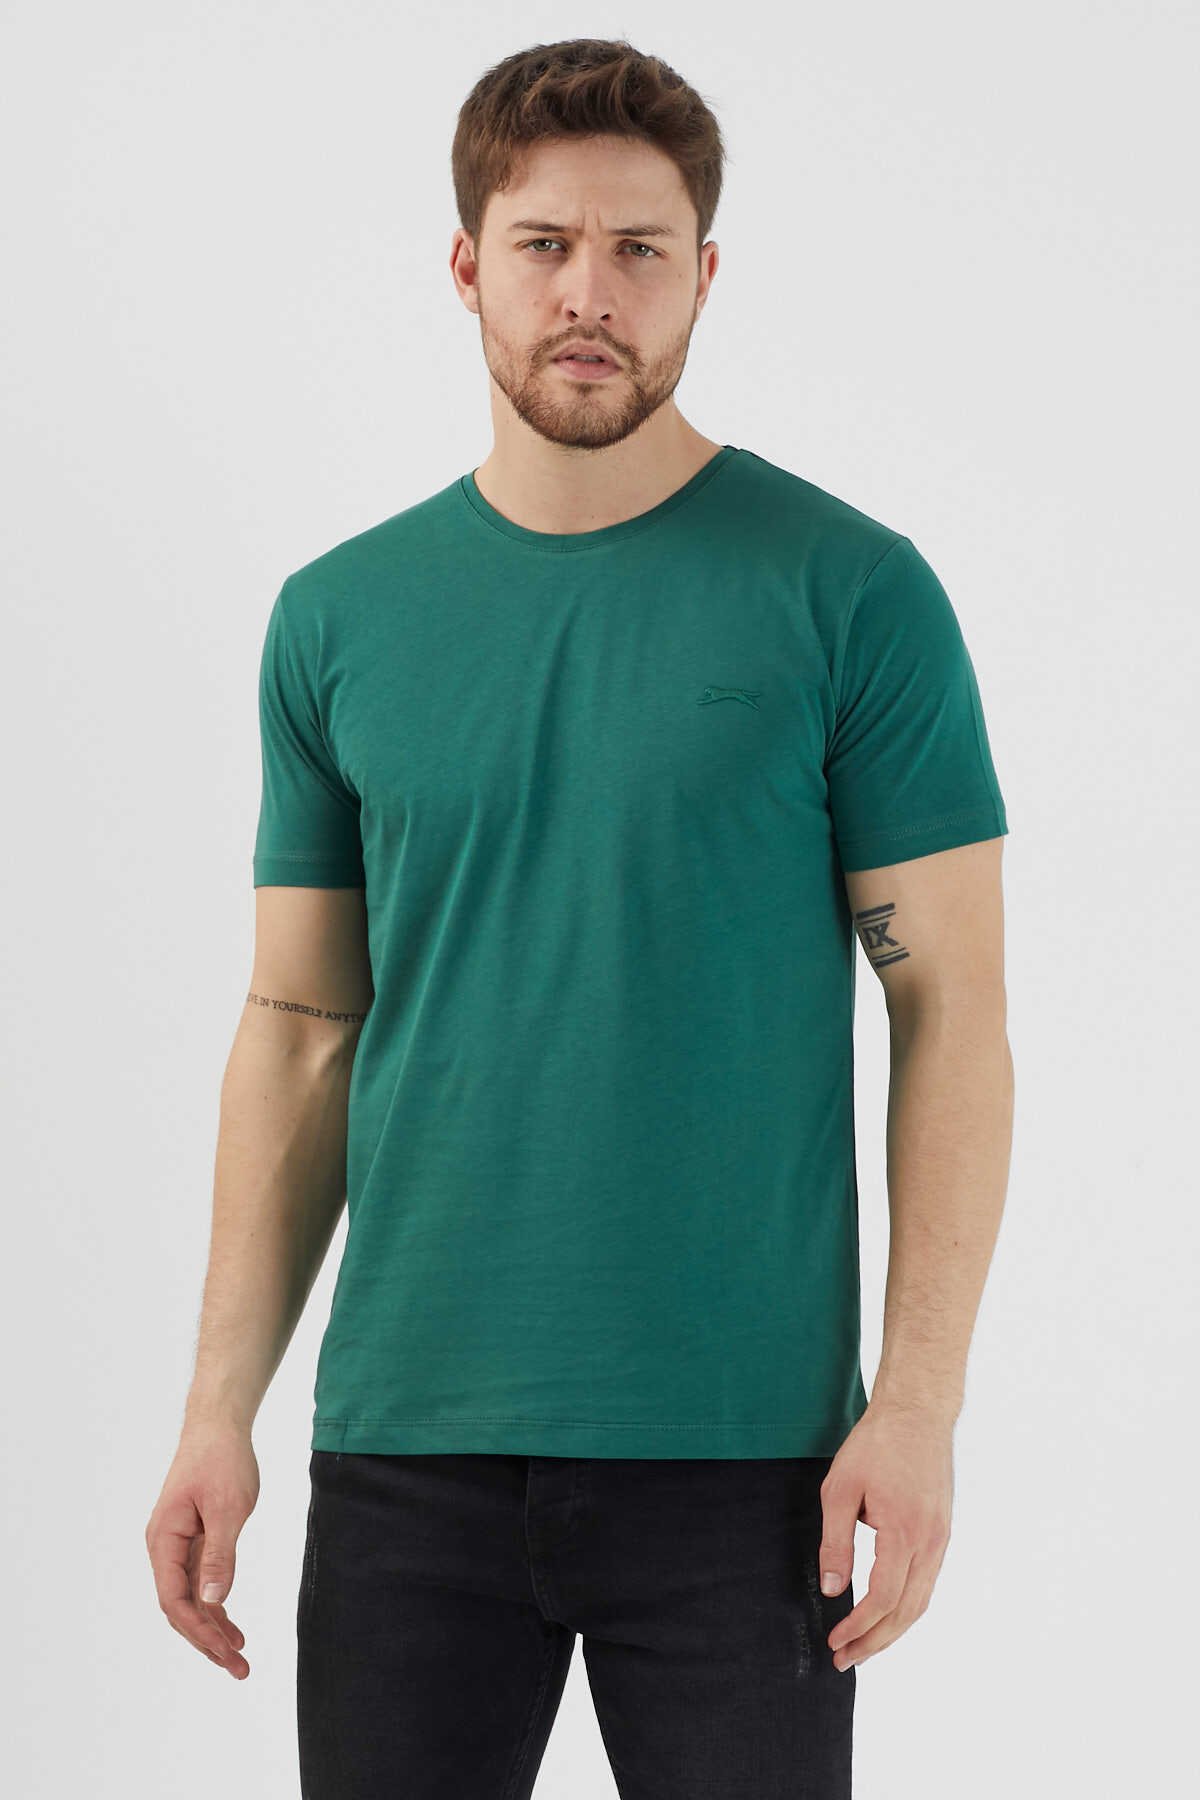 Slazenger - Slazenger SANDER KTN Erkek Kısa Kol T-Shirt Koyu Yeşil